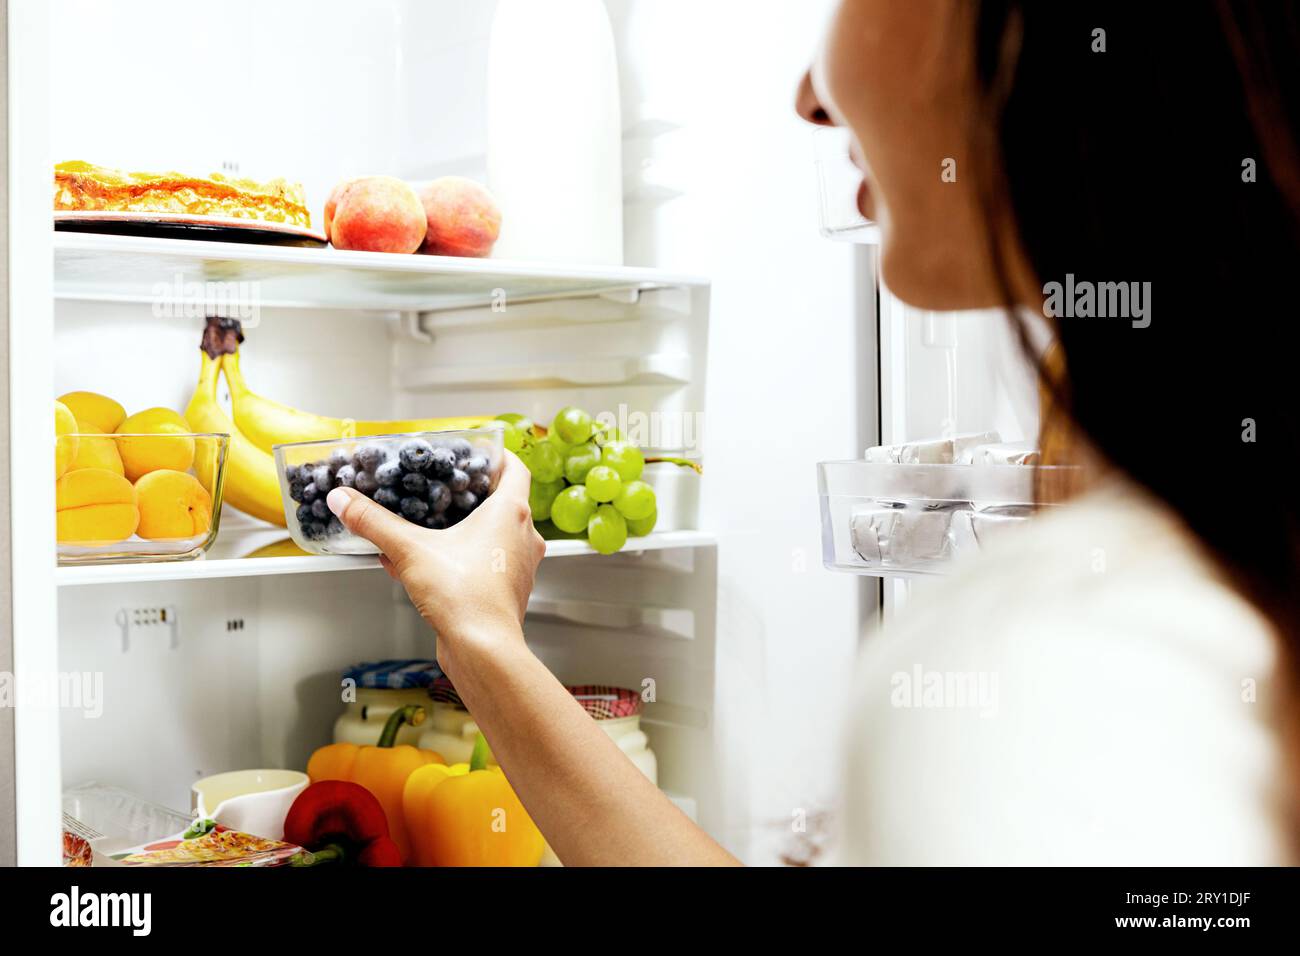 Donna che prende, afferra o preleva una scatola di mirtilli dal ripiano aperto del frigorifero o dal cassetto del frigorifero pieno di frutta, verdura, banana, pesche, Foto Stock